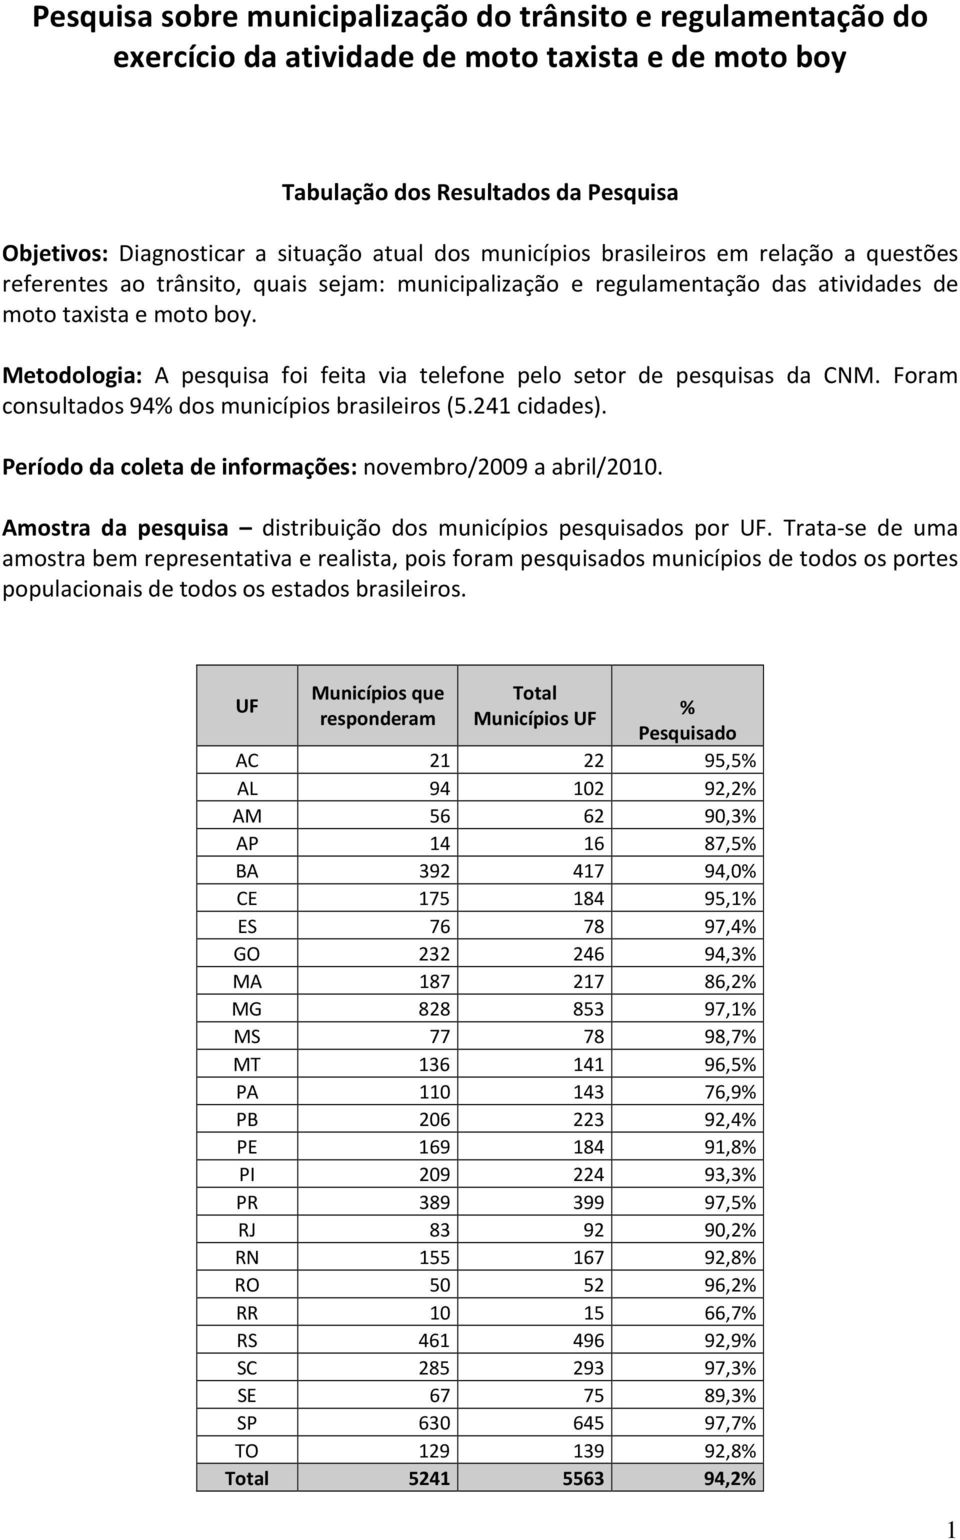 Metodologia: A pesquisa foi feita via telefone pelo setor de pesquisas da CNM. Foram consultados 94% dos municípios brasileiros (5.241 cidades).